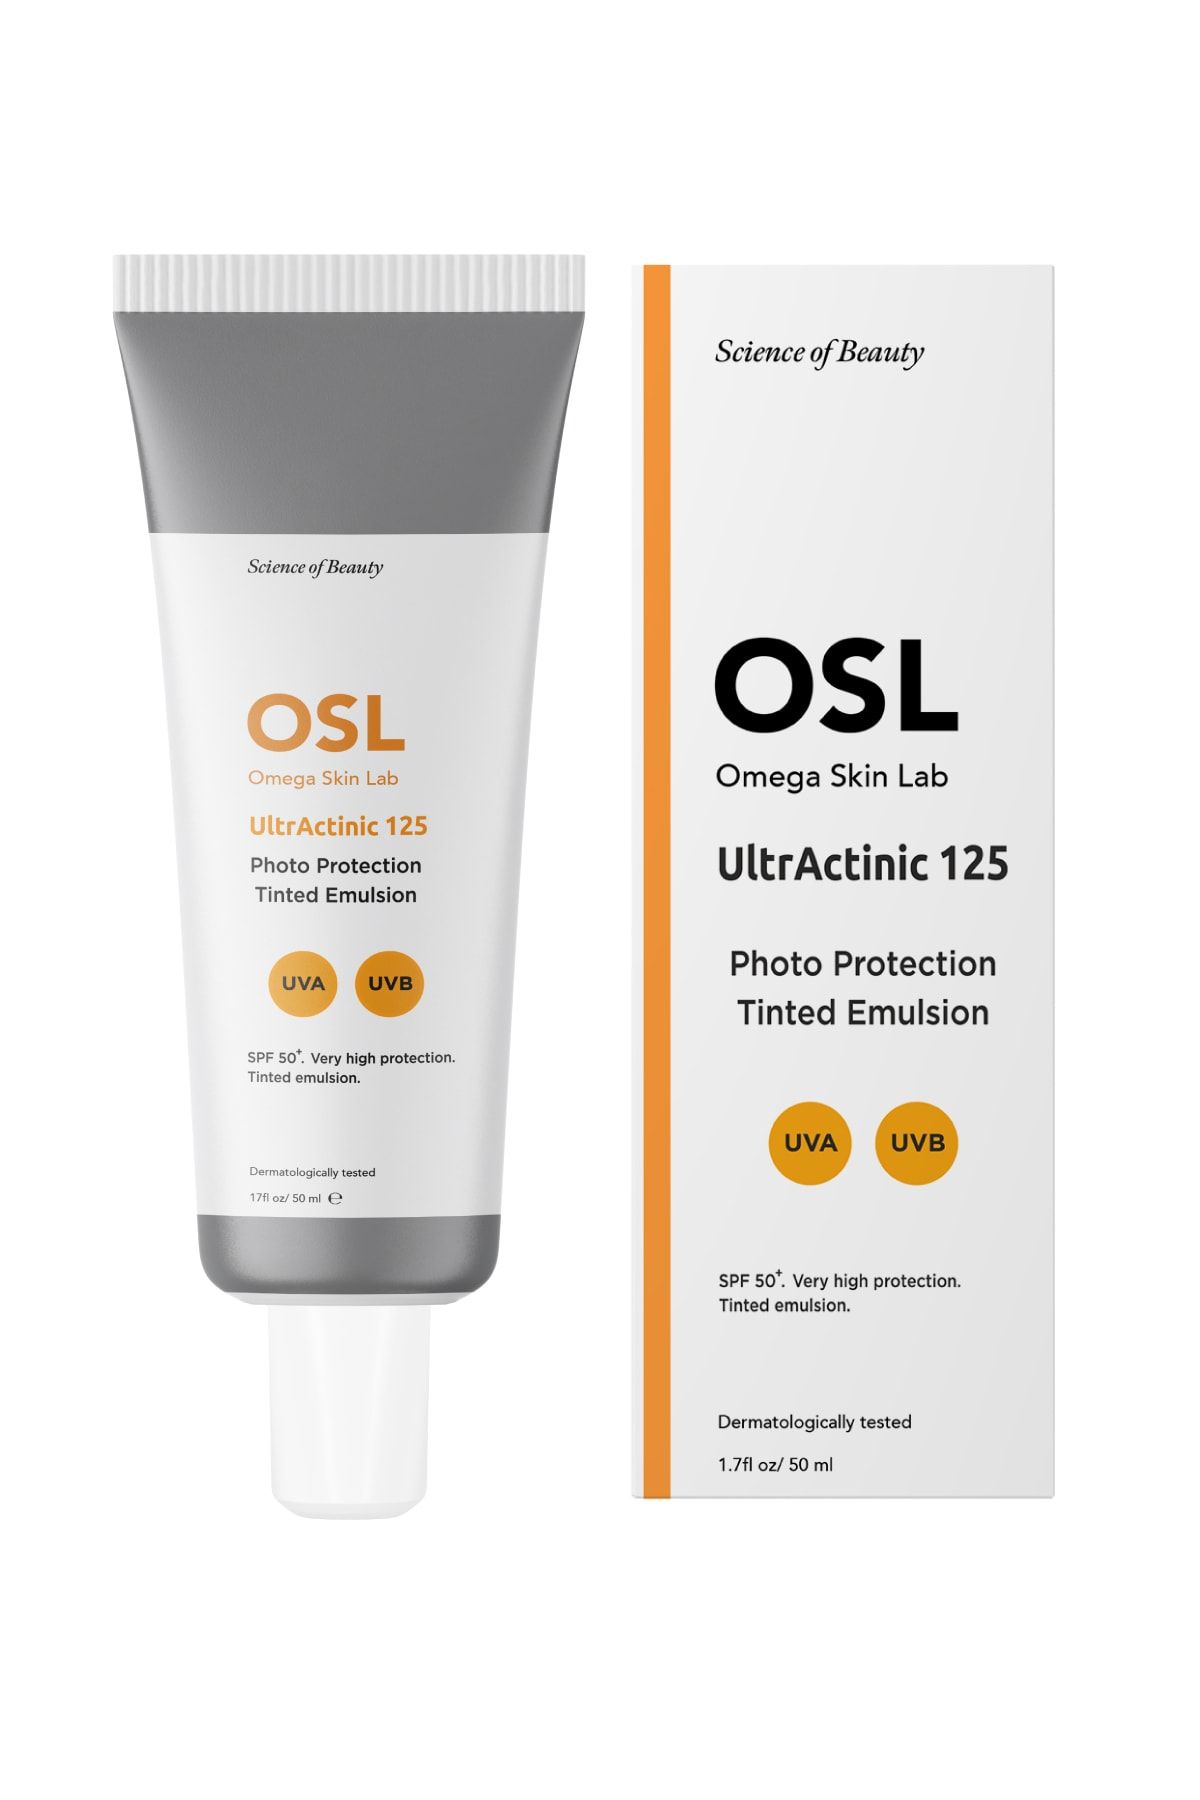 OSL Omega Skin Lab OSL ULTRACTINIC 125 yüksek Faktörlü Güneş Koruyucu